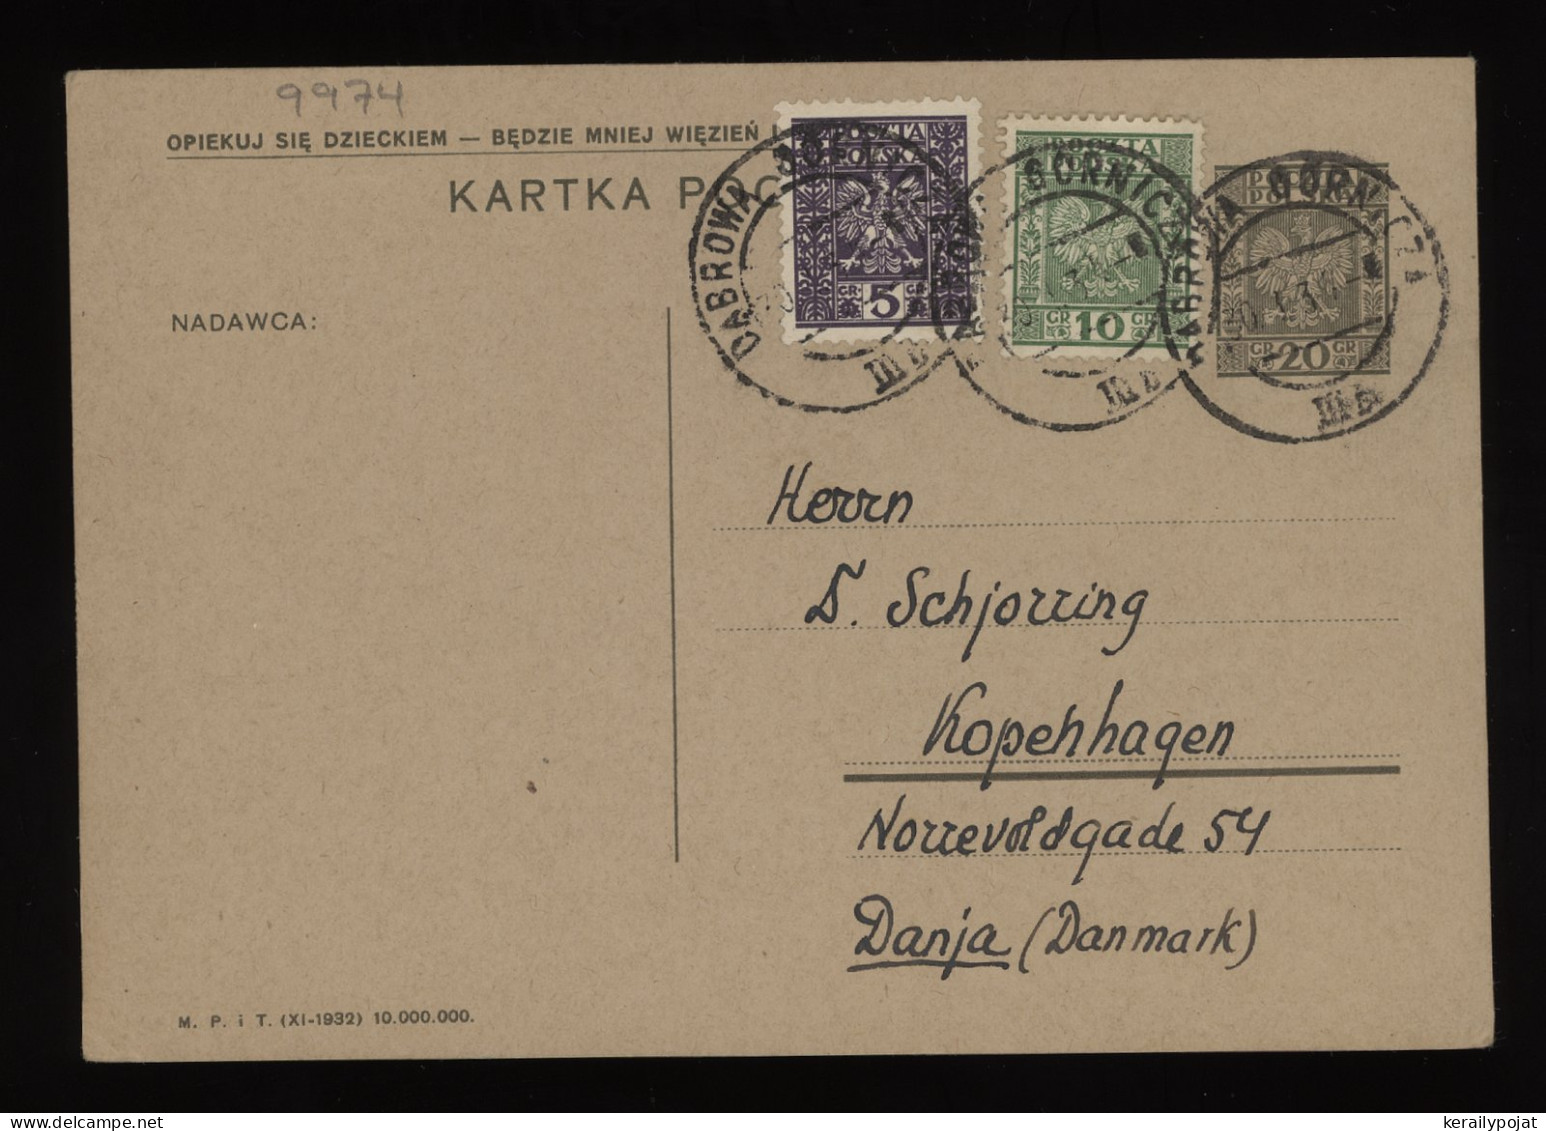 Poland 1934 Dabrowa Stationery Card To Denmark__(9974) - Entiers Postaux